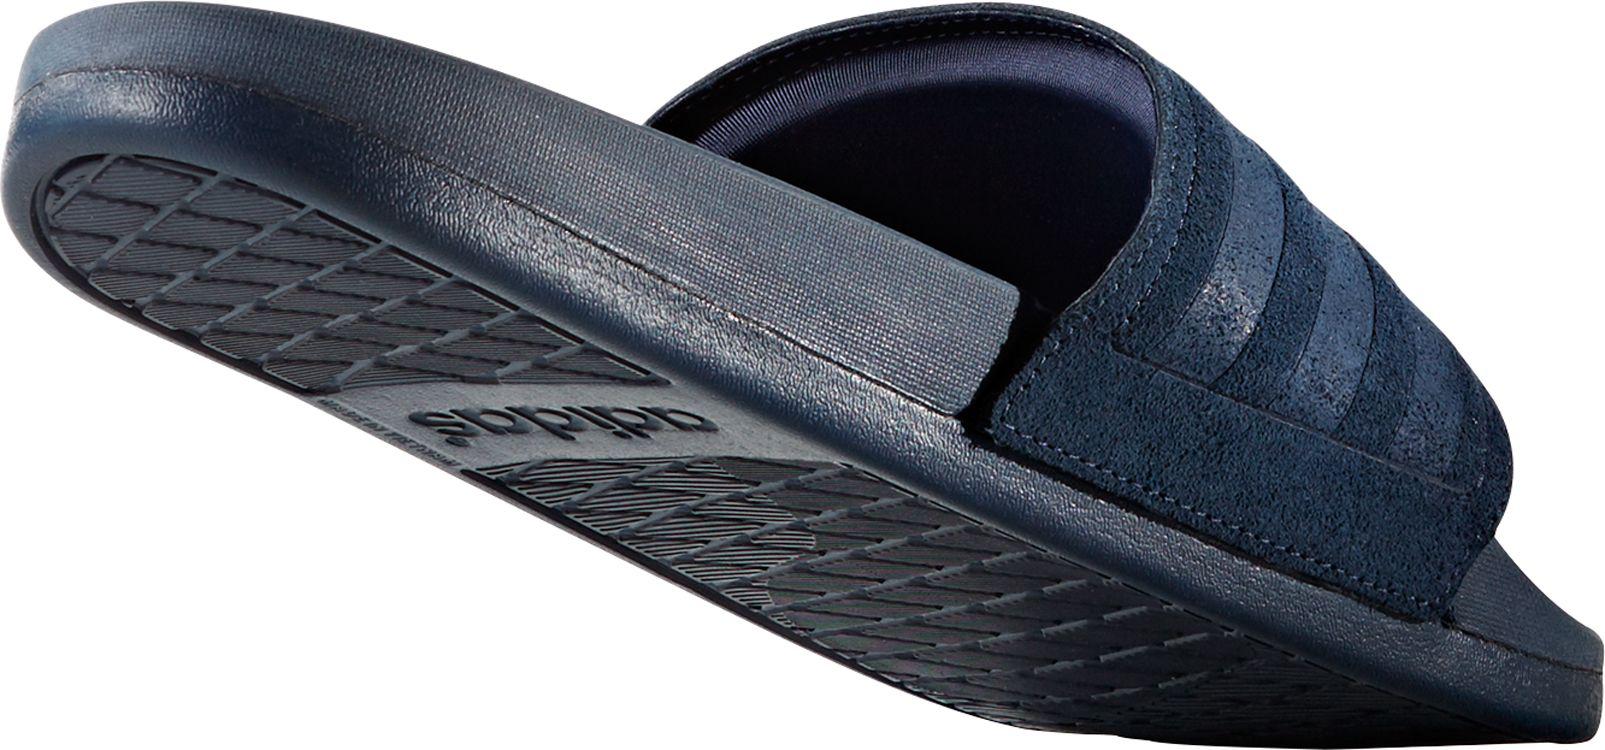 birkis waterproof sandals